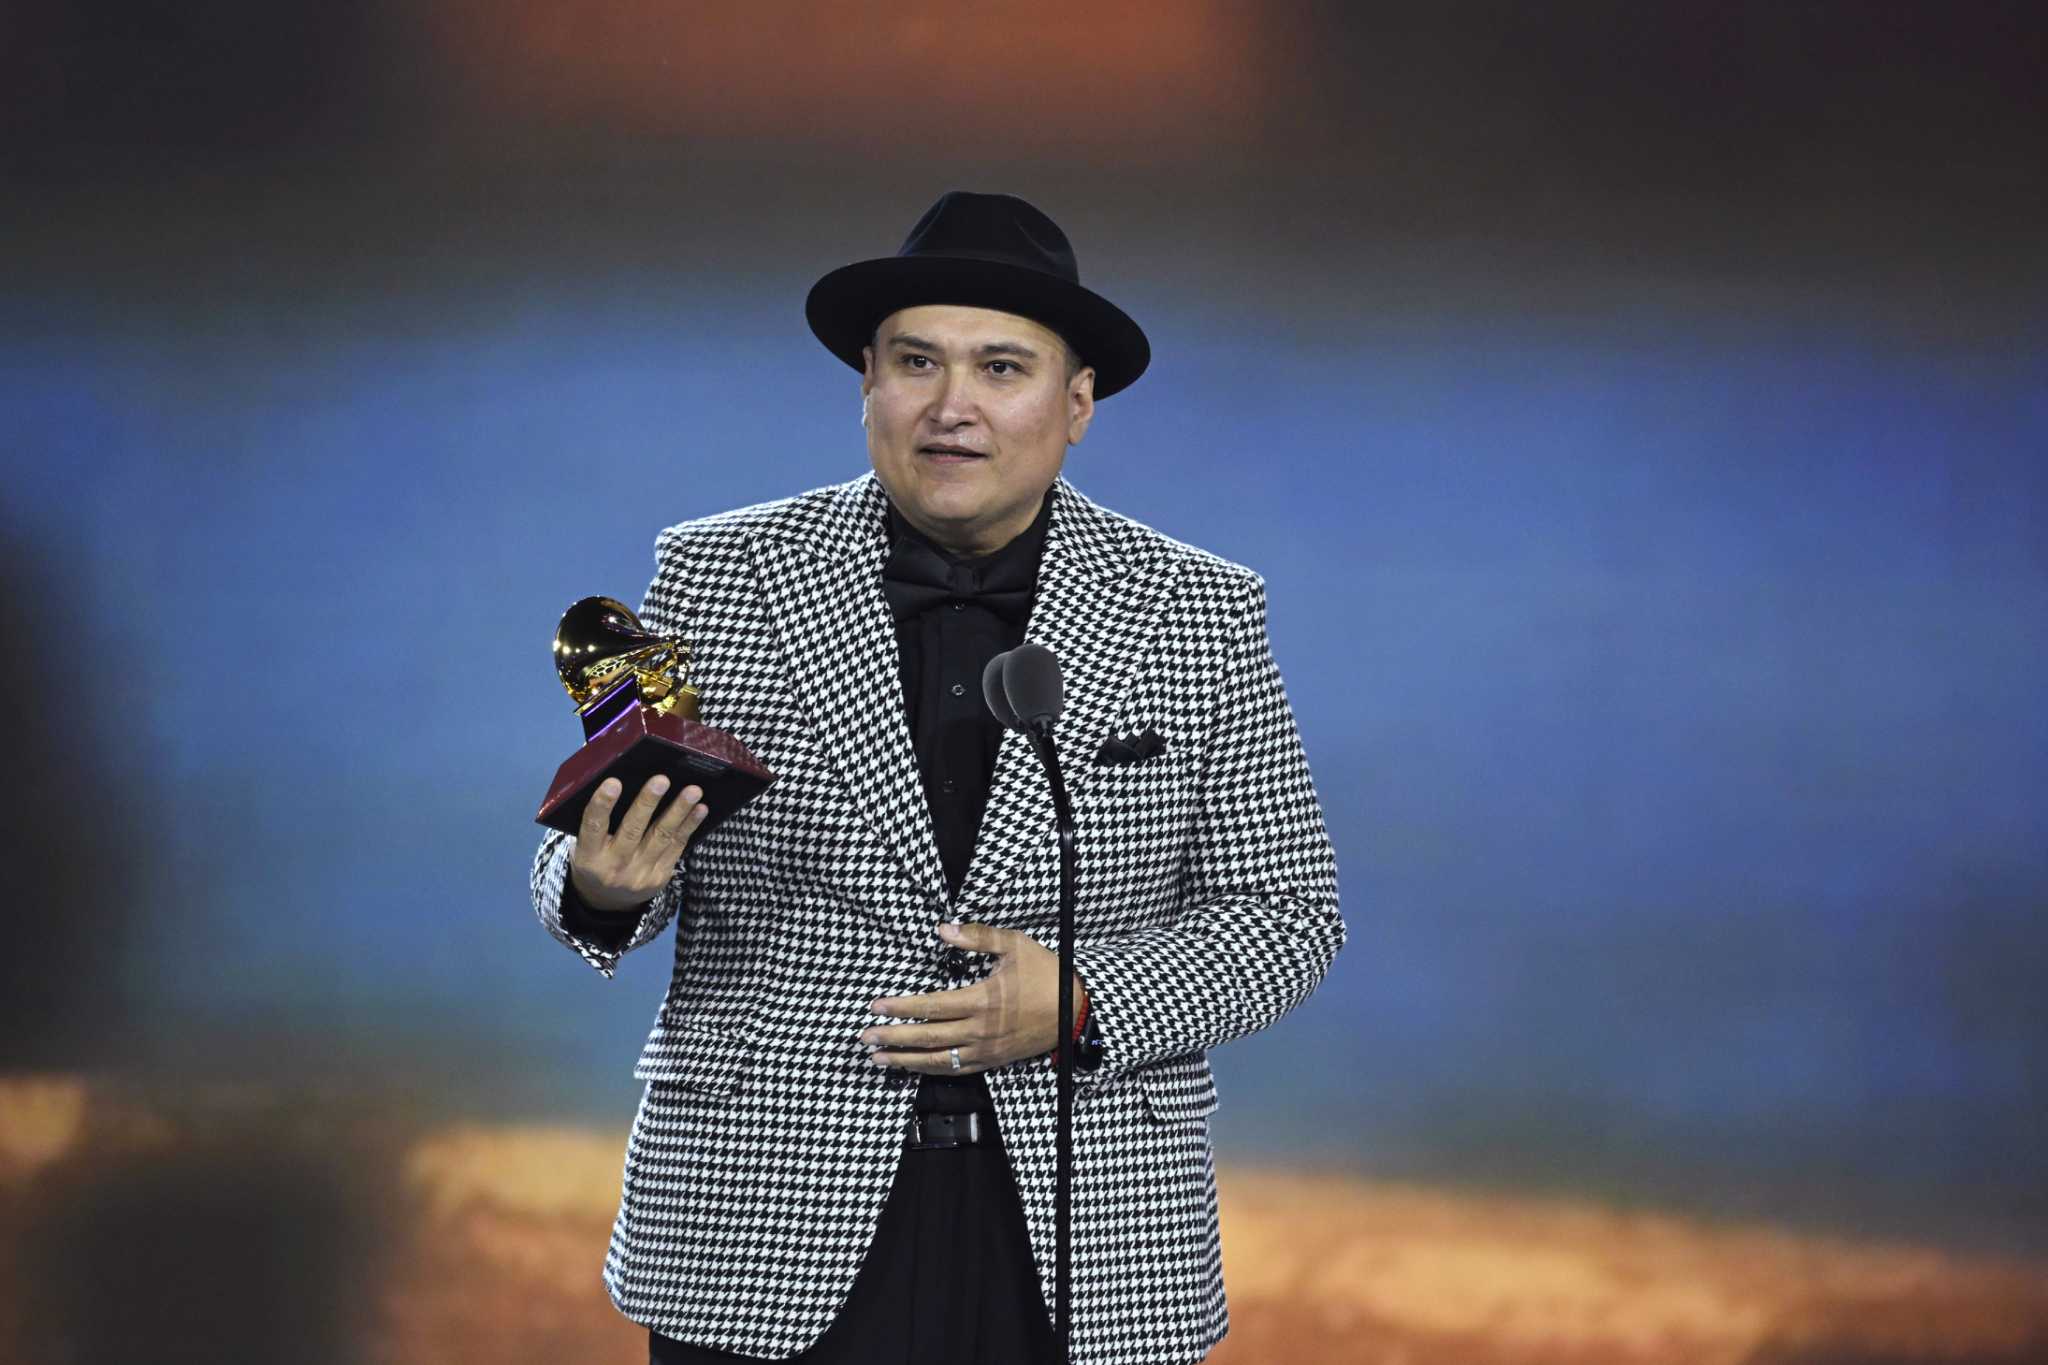 Los premios Latin Grammy honran a Juan Treviño de Houston como Mejor Álbum Tejano